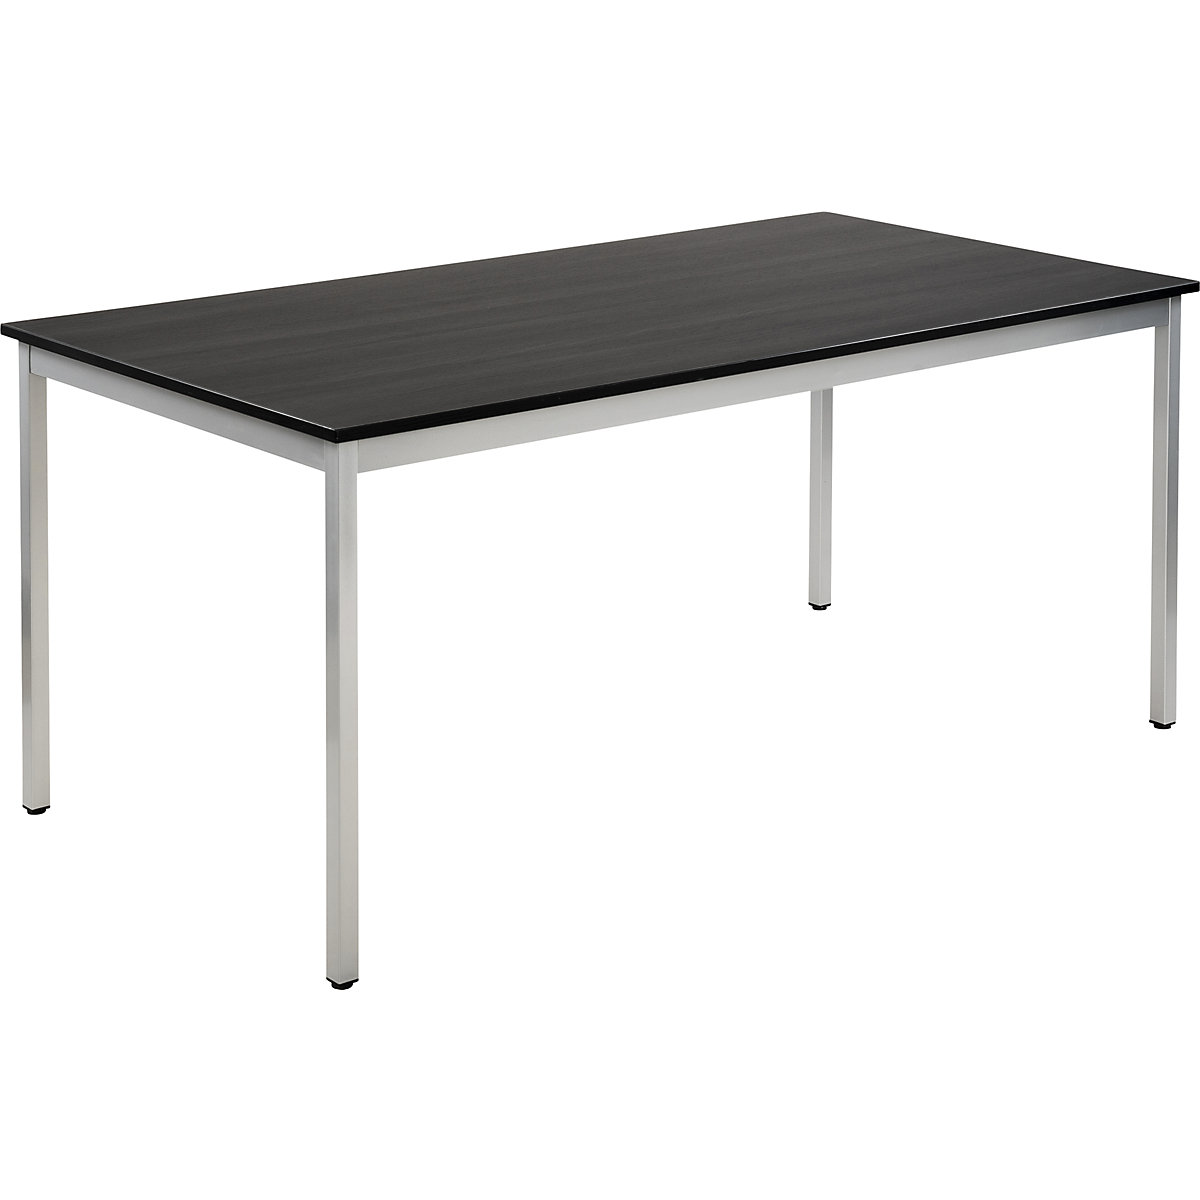 Večnamenska miza – eurokraft basic, pravokotne oblike, VxŠxG 740 x 1600 x 800 mm, plošča v imitaciji jesena temno sive barve, ogrodje aluminijasto bele barve-15